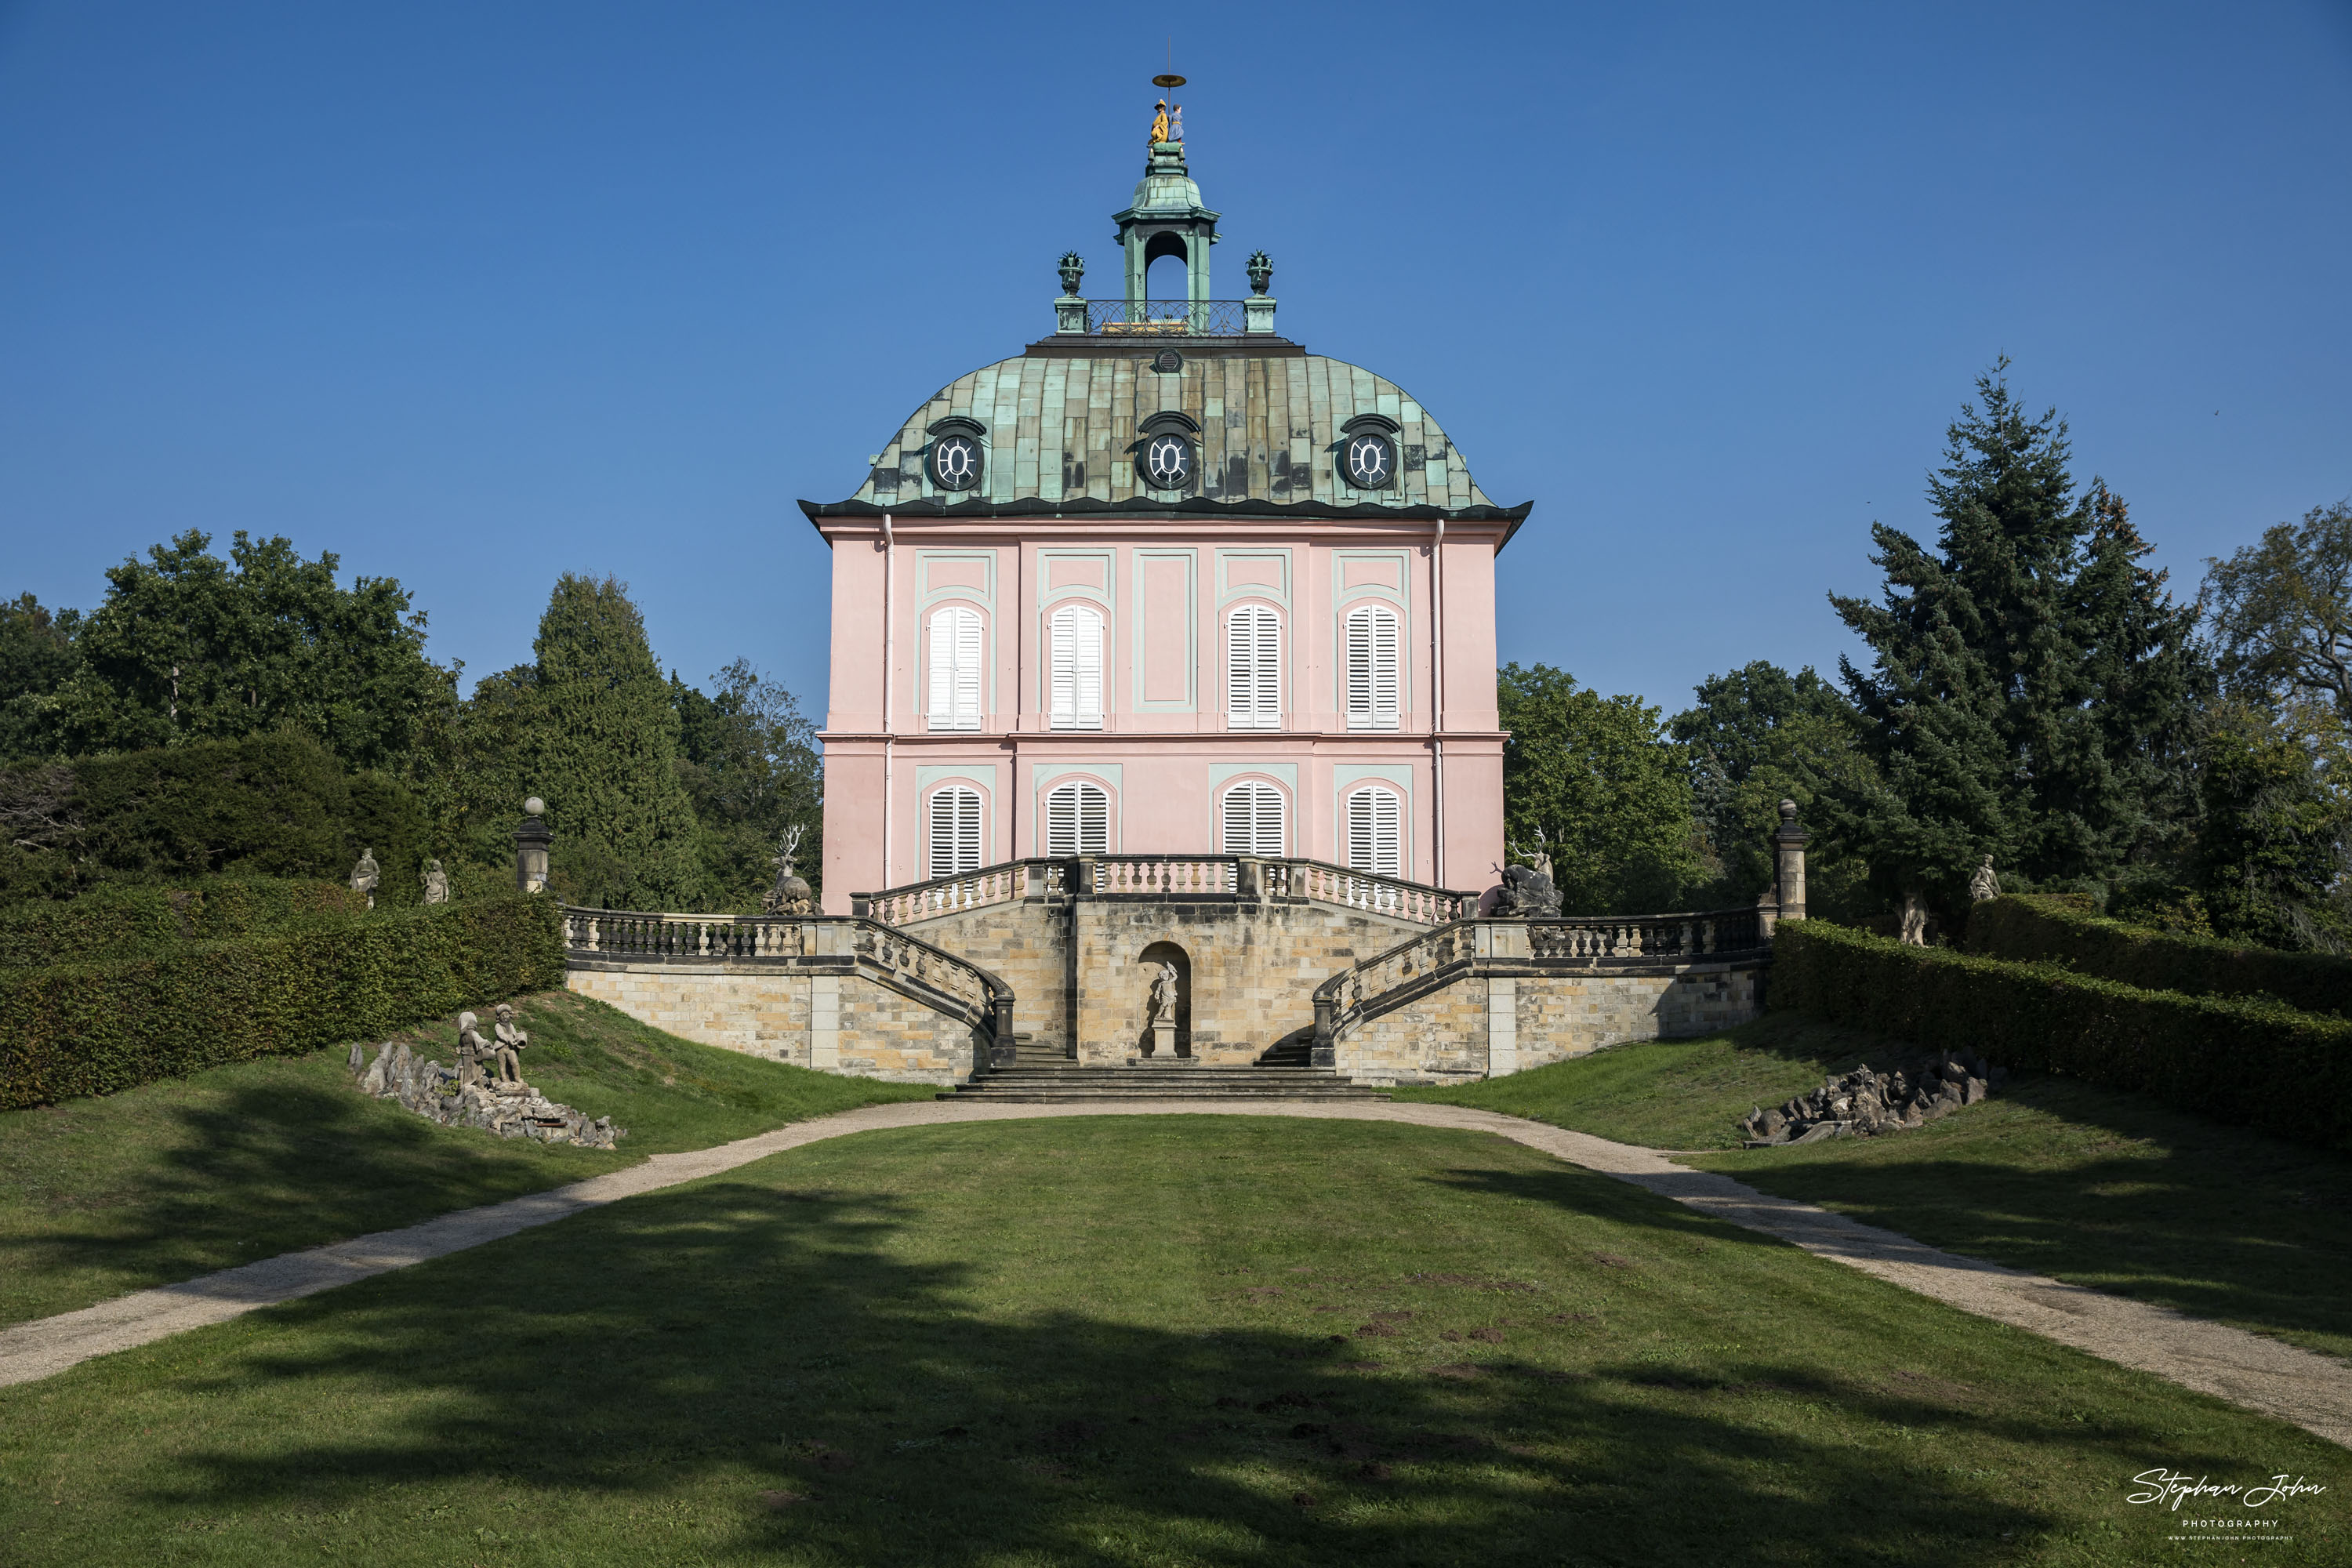 Das Fasanenschlösschen befindet sich in der 1728 angelegten Fasanerie des Schlossparks von Moritzburg.